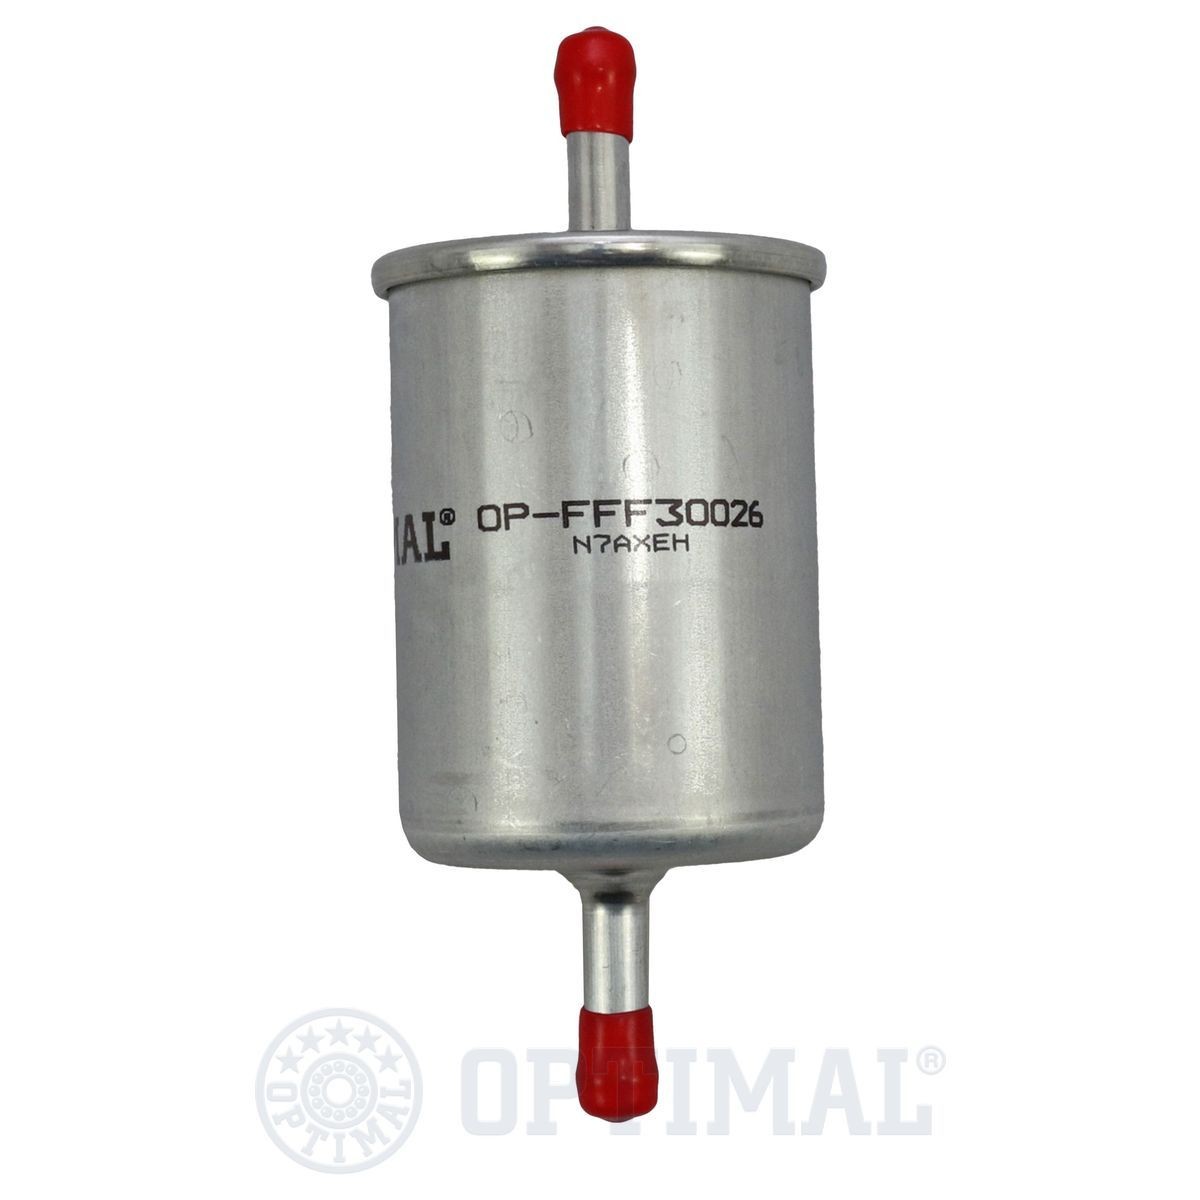 OPTIMAL OP-FFF30026 Fuel filter 25 161 249